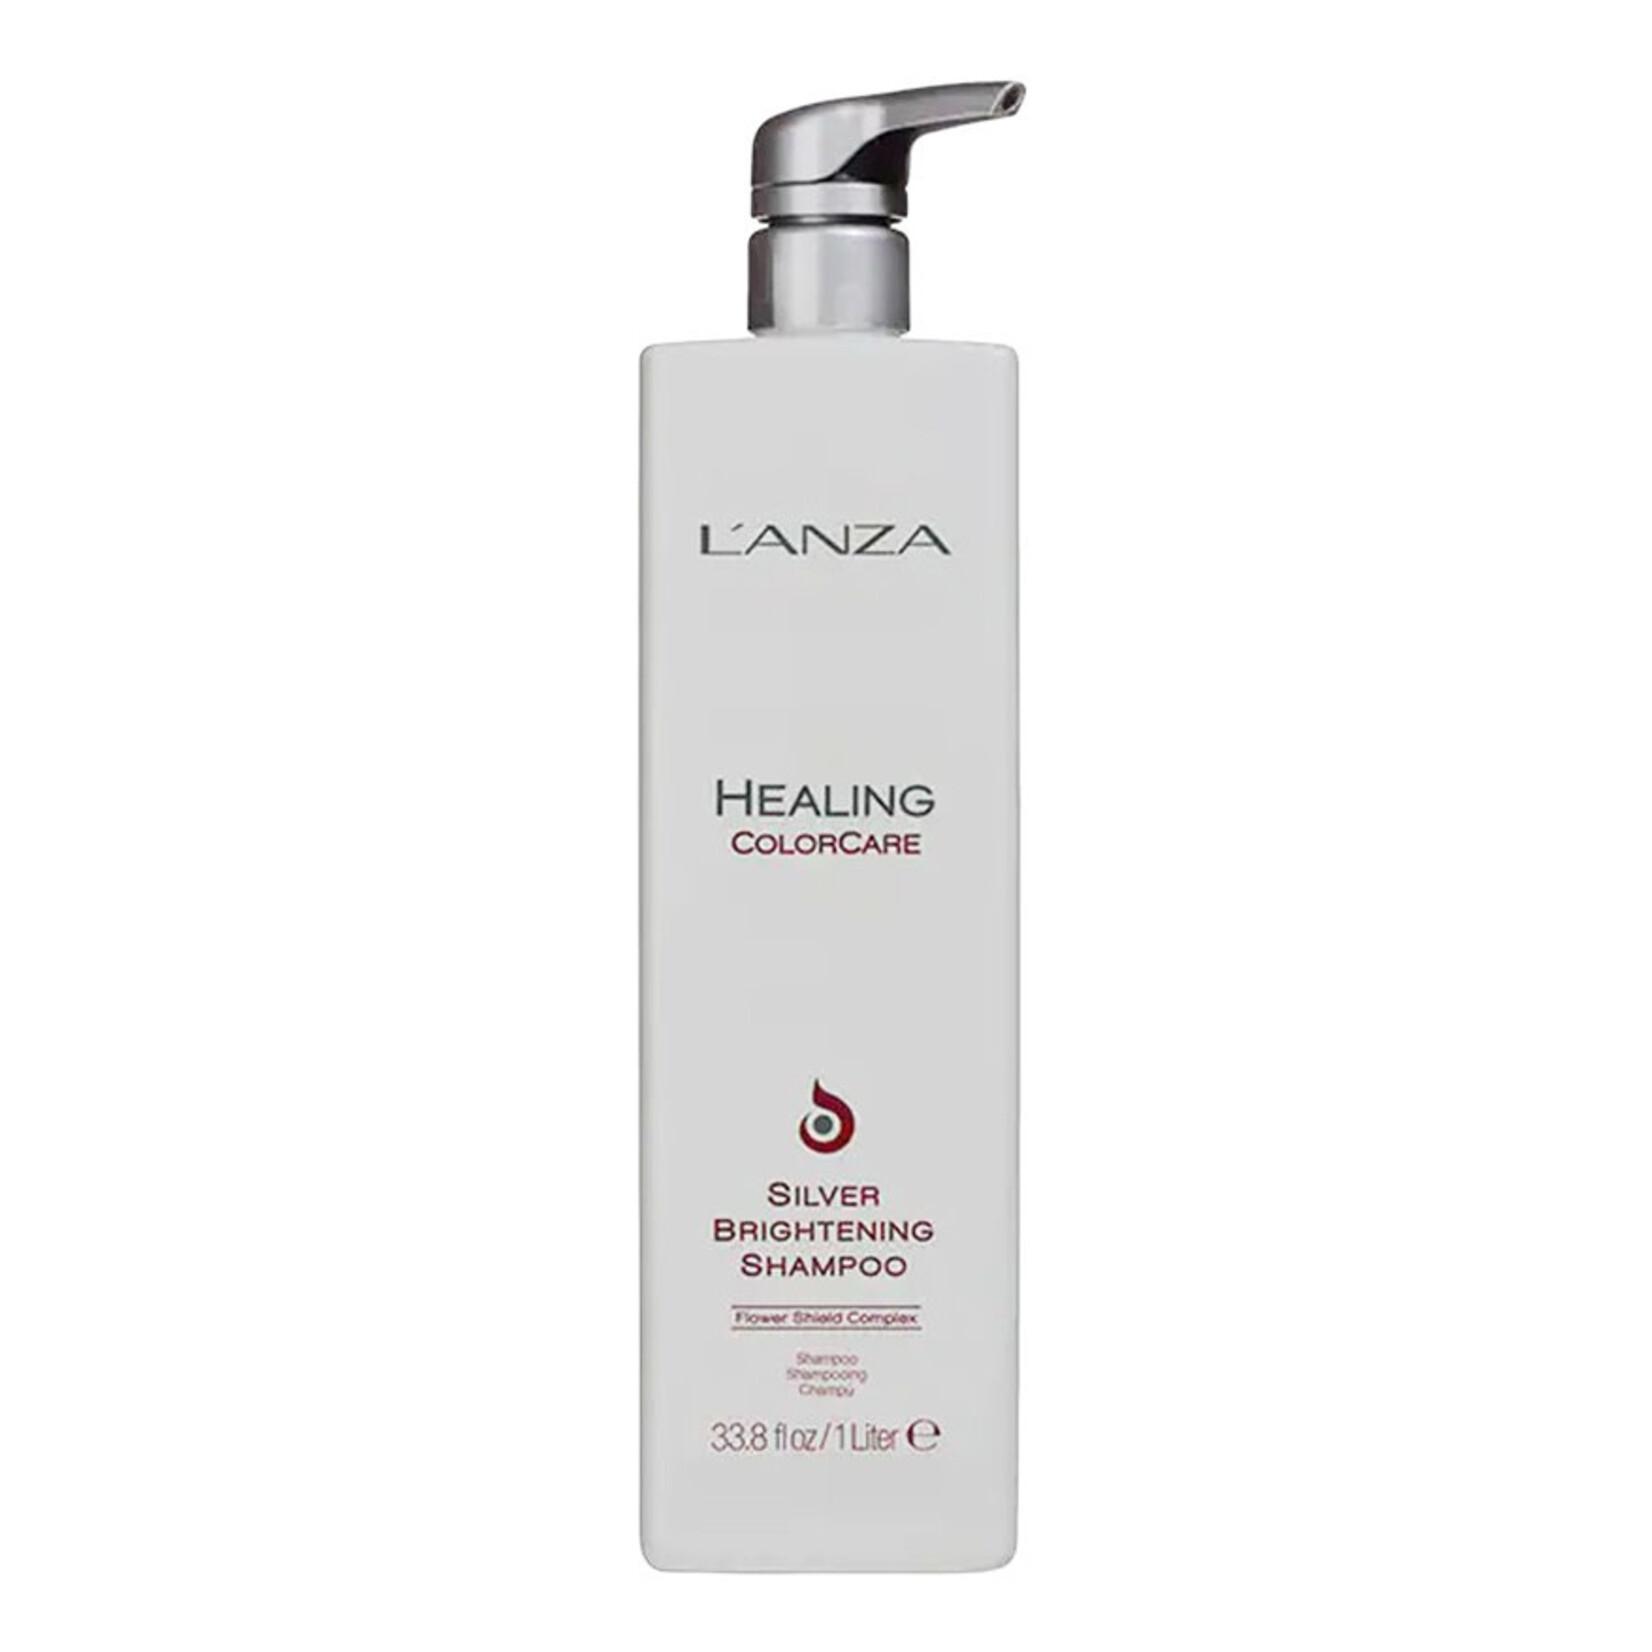 L'Anza L'Anza - Healing ColorCare - Silver Brightening Shampoo 1L